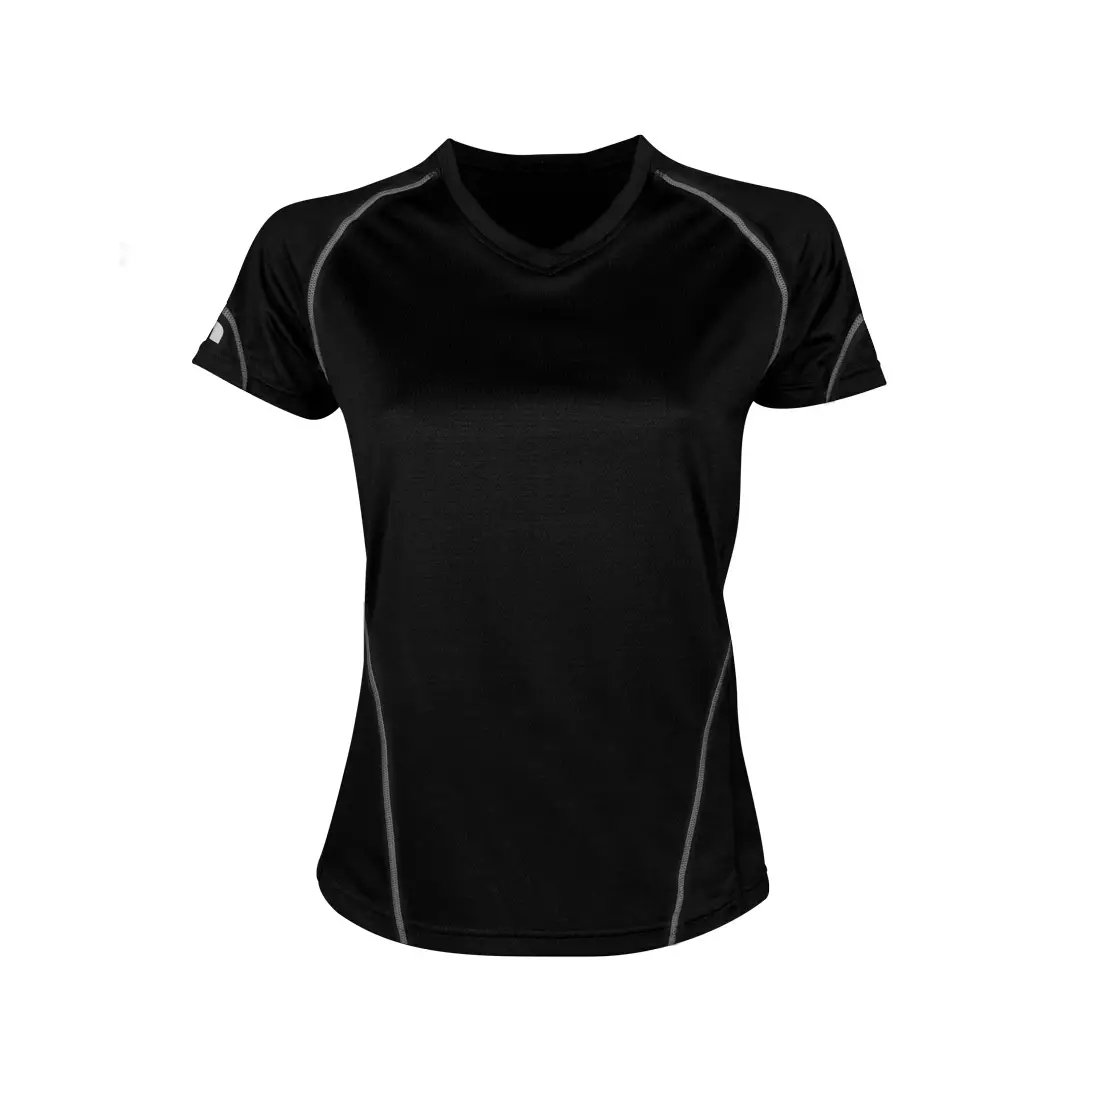 NEWLINE COOLMAX TEE - women's running T-shirt 13613-060